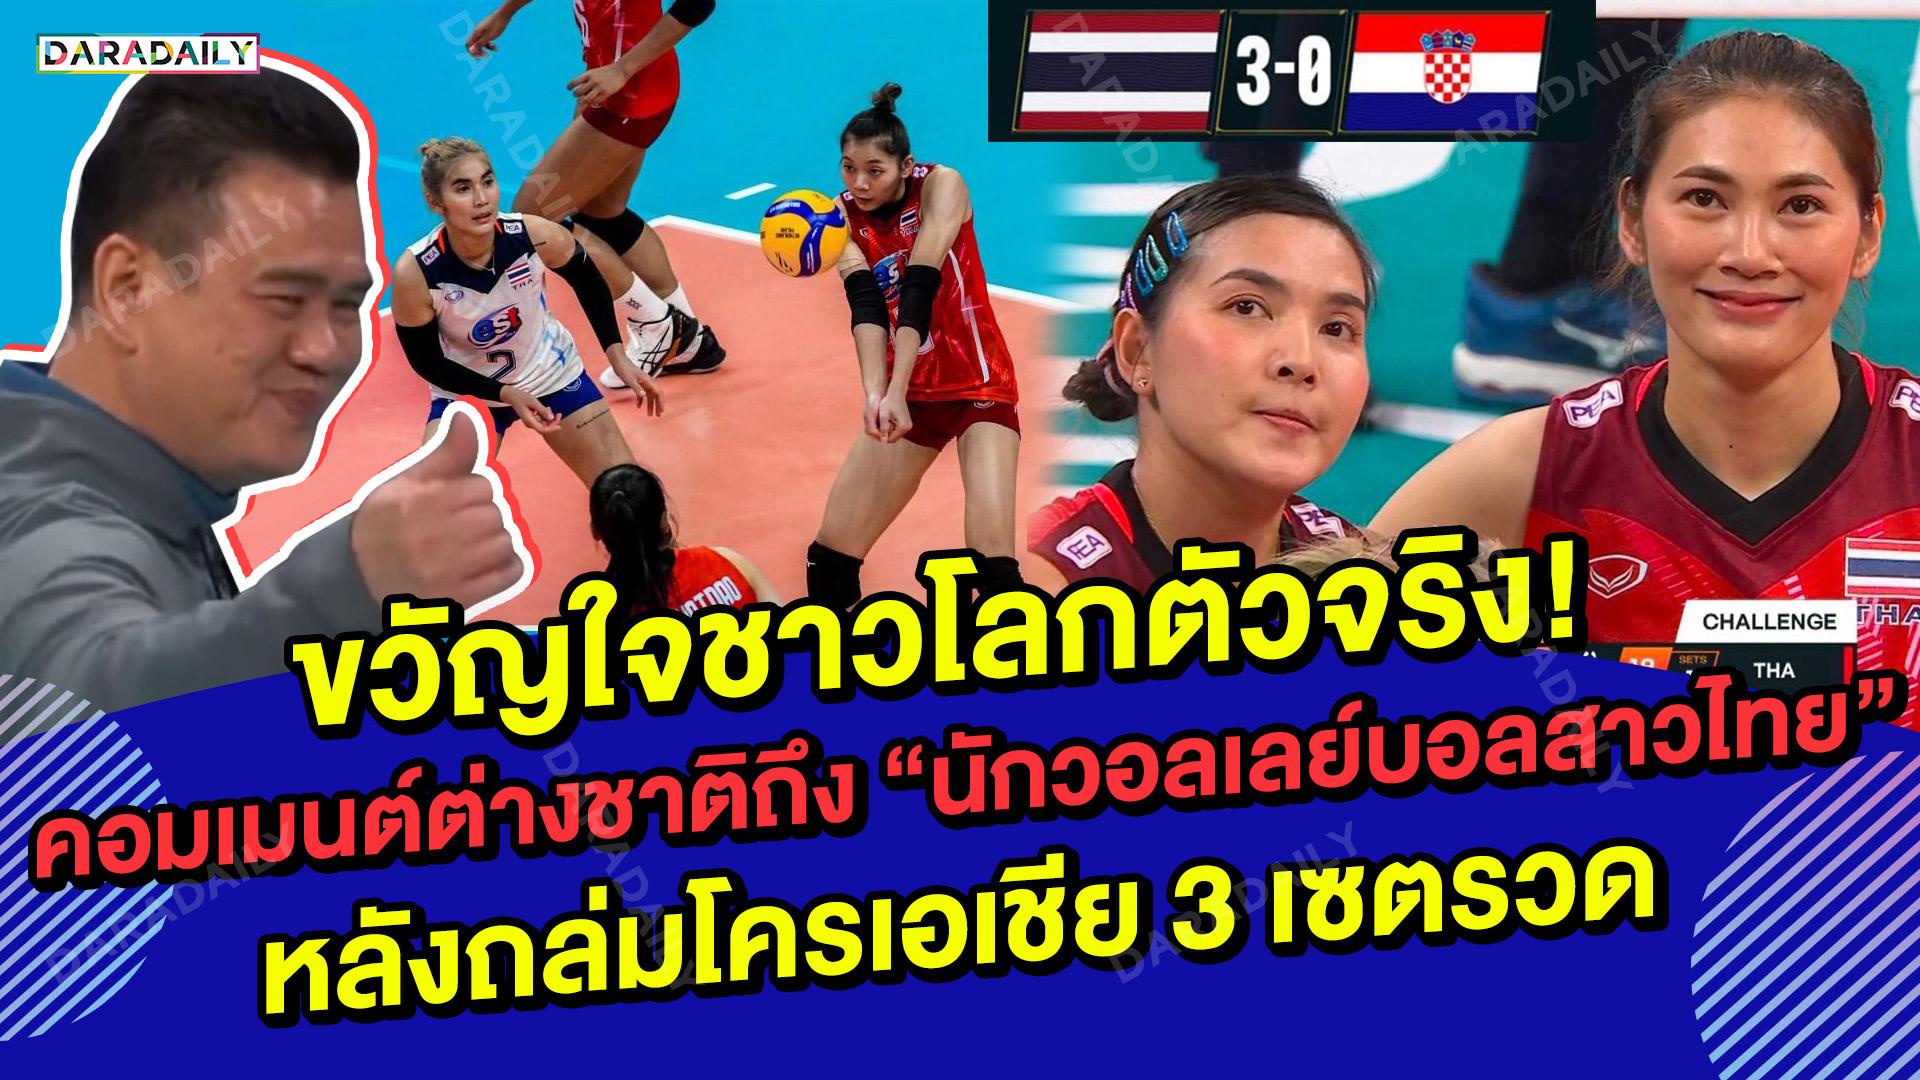 ระเบิดฟอร์มโหดขวัญใจชาวโลกตัวจริง! คอมเมนต์ต่างชาติถึง “นักวอลเลย์บอลสาวไทย” หลังถล่มโครเอเชีย